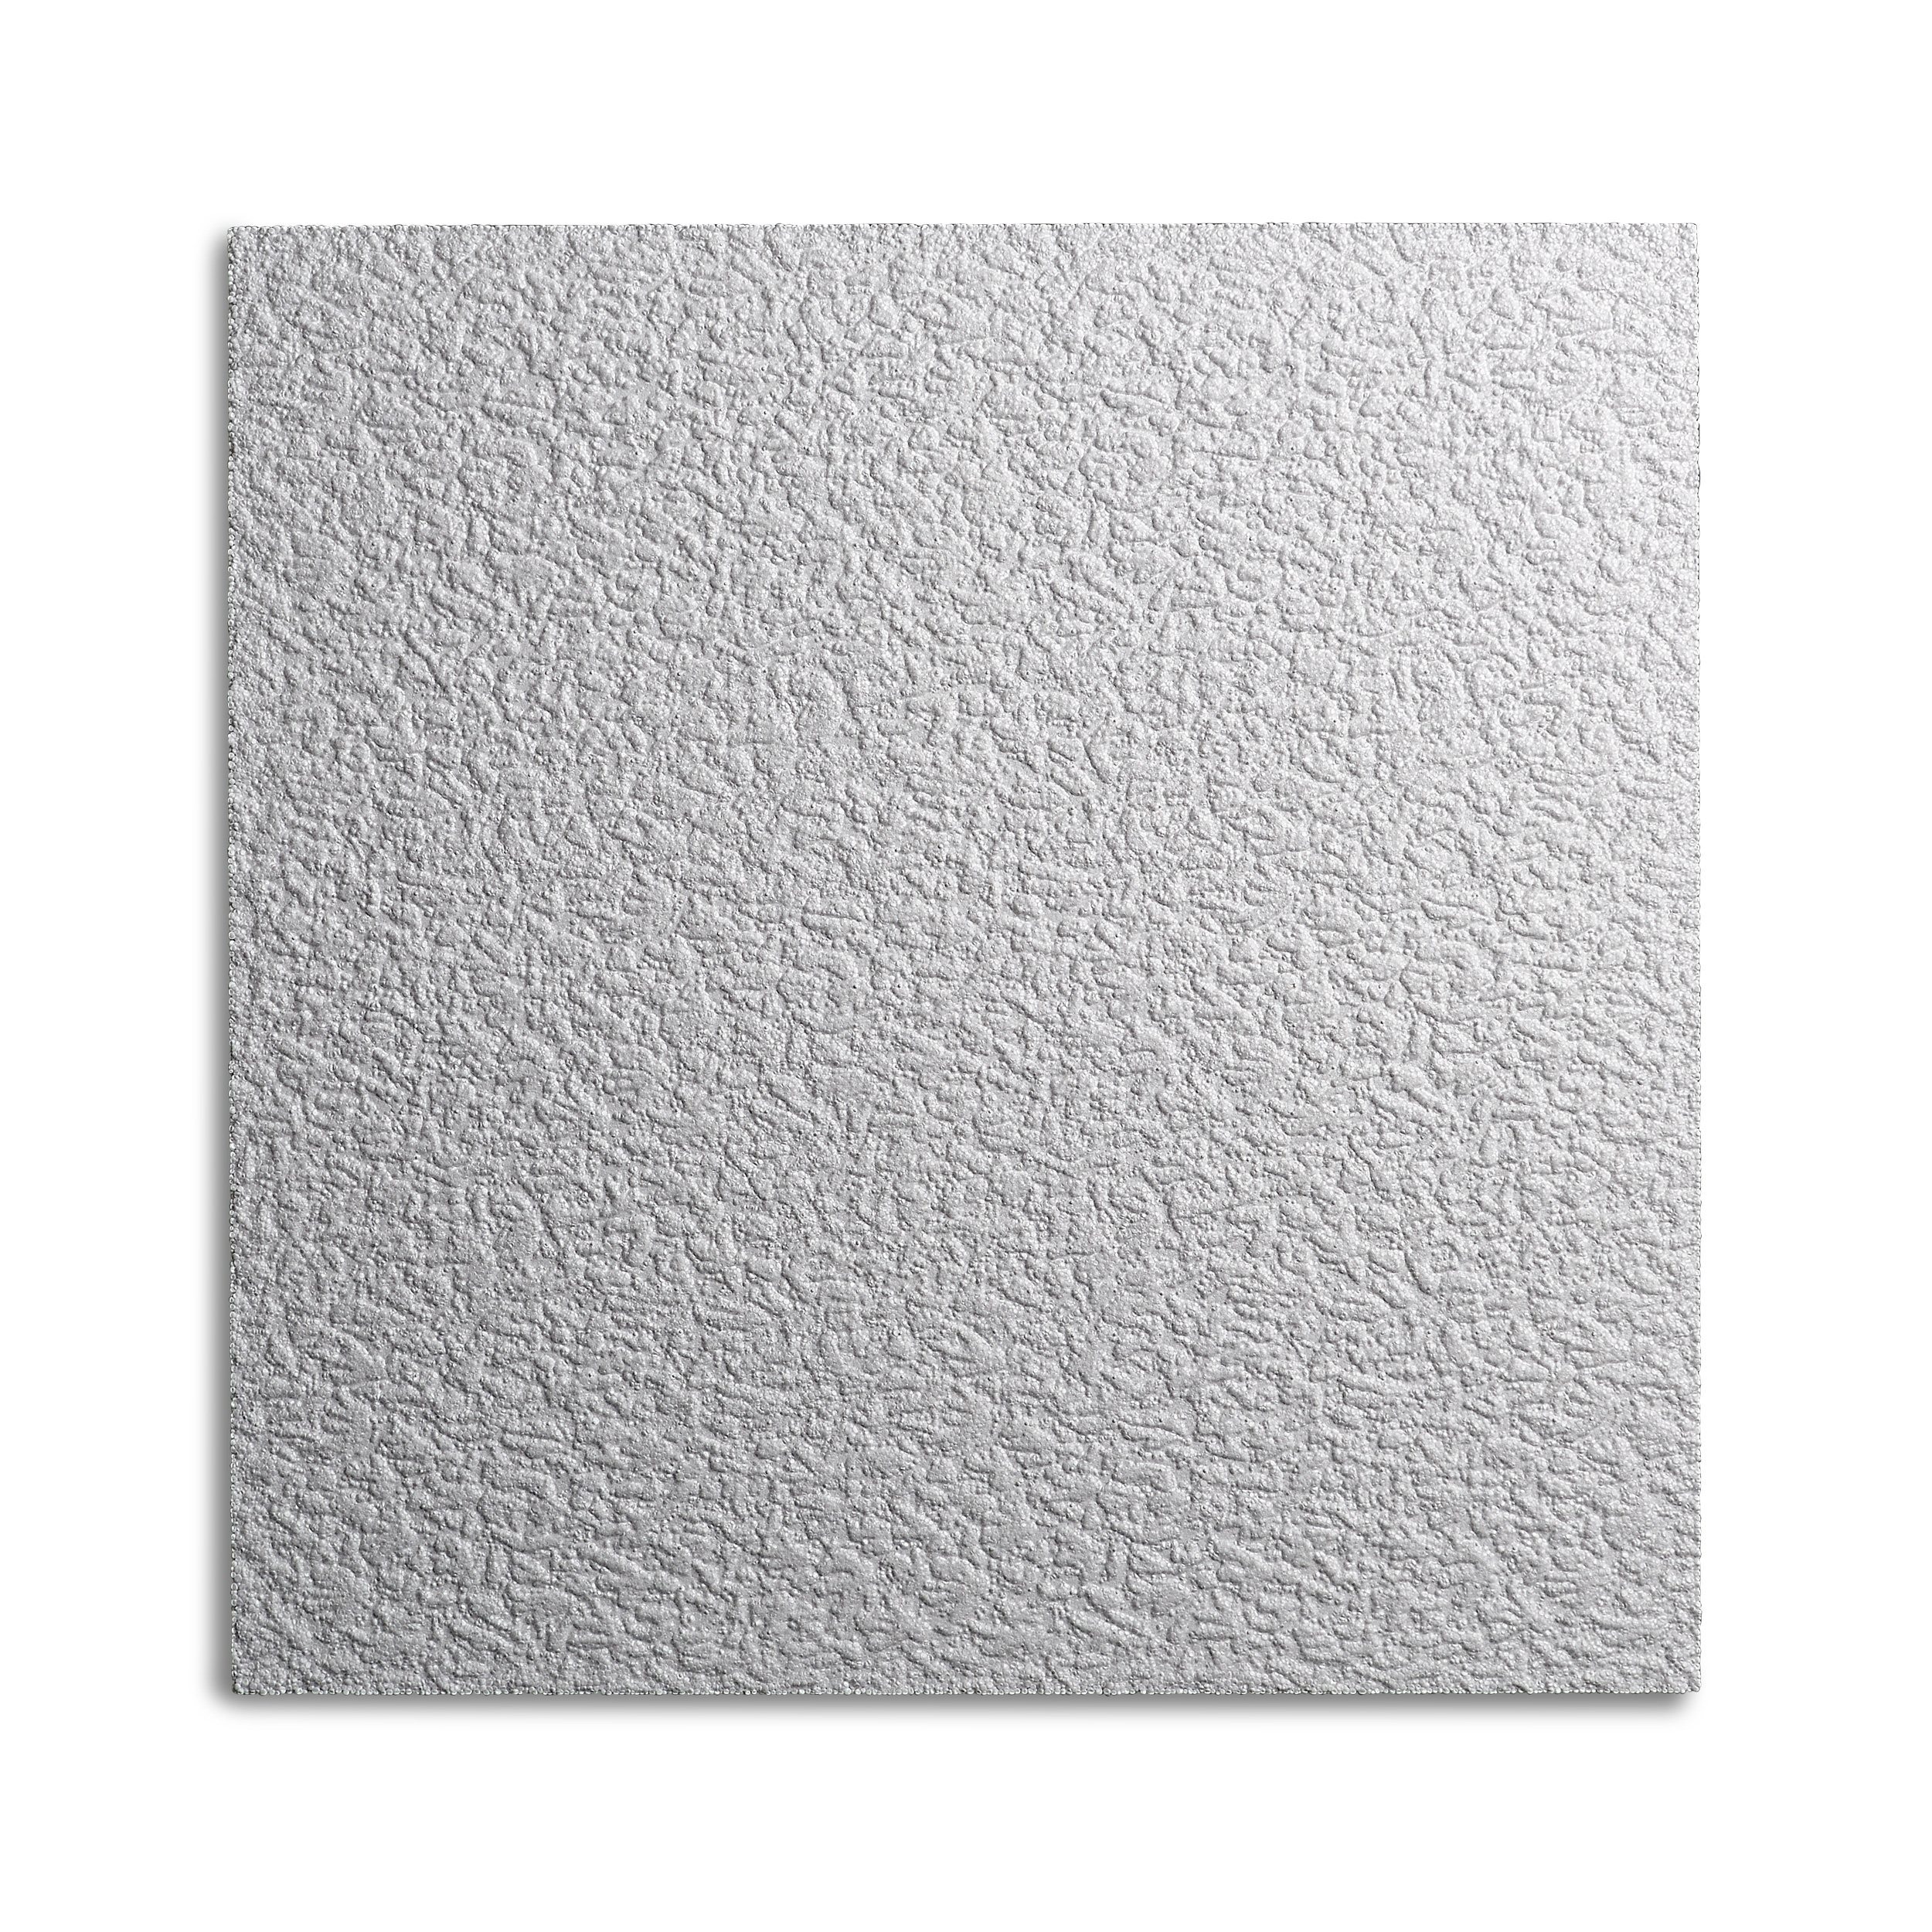 Decosa Deckenplatte AP 103 (Gent), weiß, 50 x 50 cm